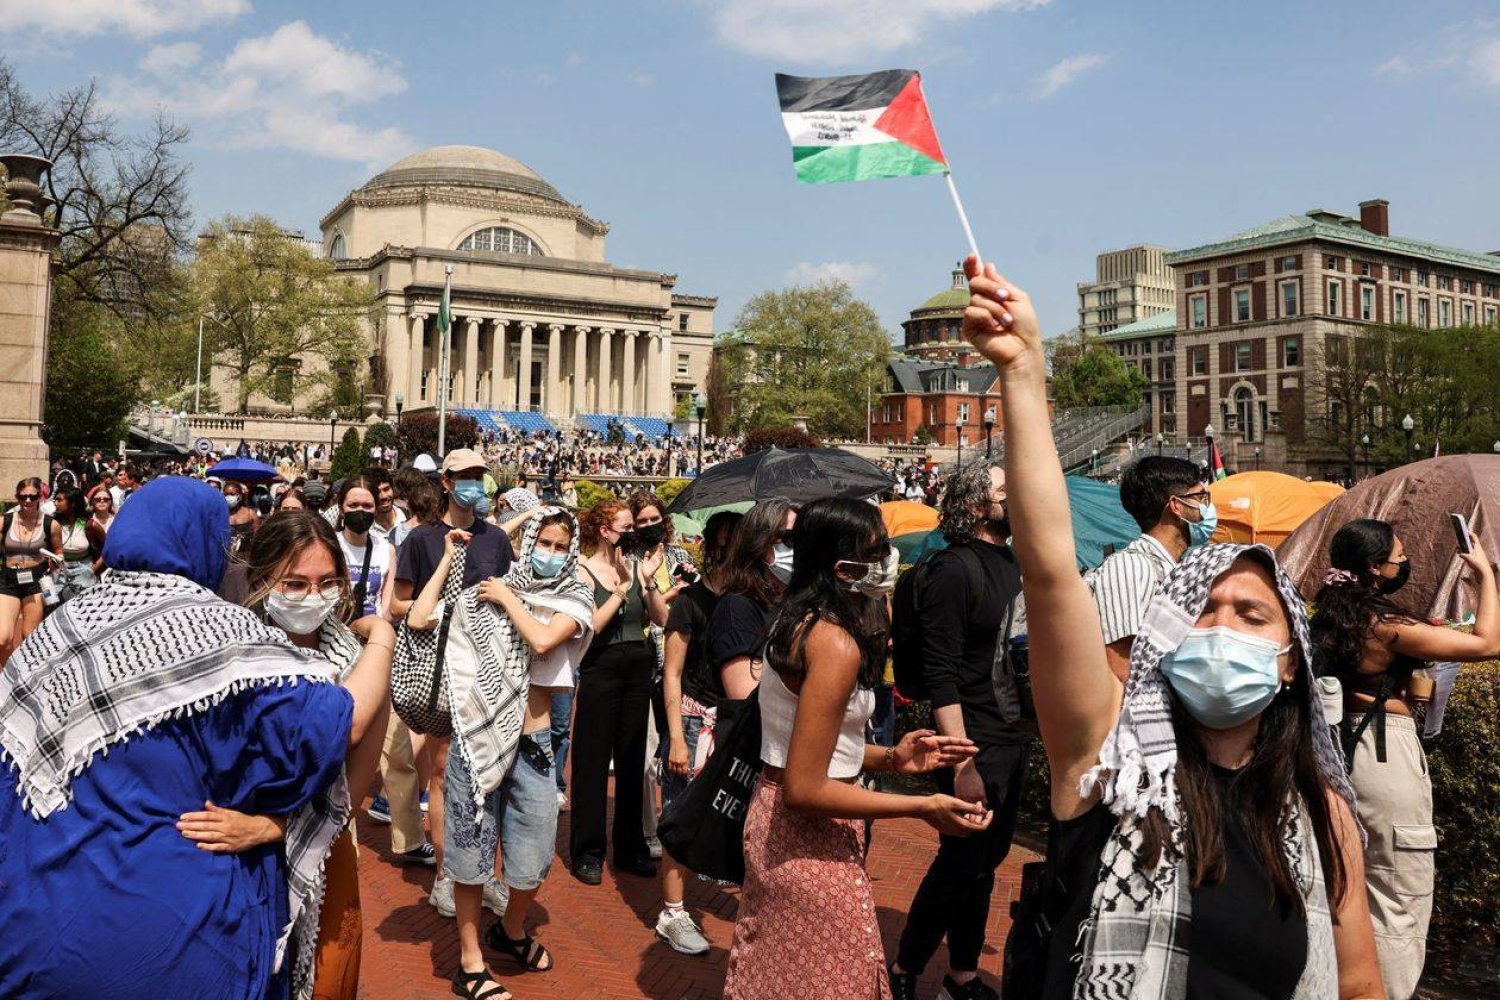 كوفيات وأعلام فلسطينية يرفعها الطلاب المحتجون في قلب حرم جامعة كولمبيا بنيويورك (غيتي)